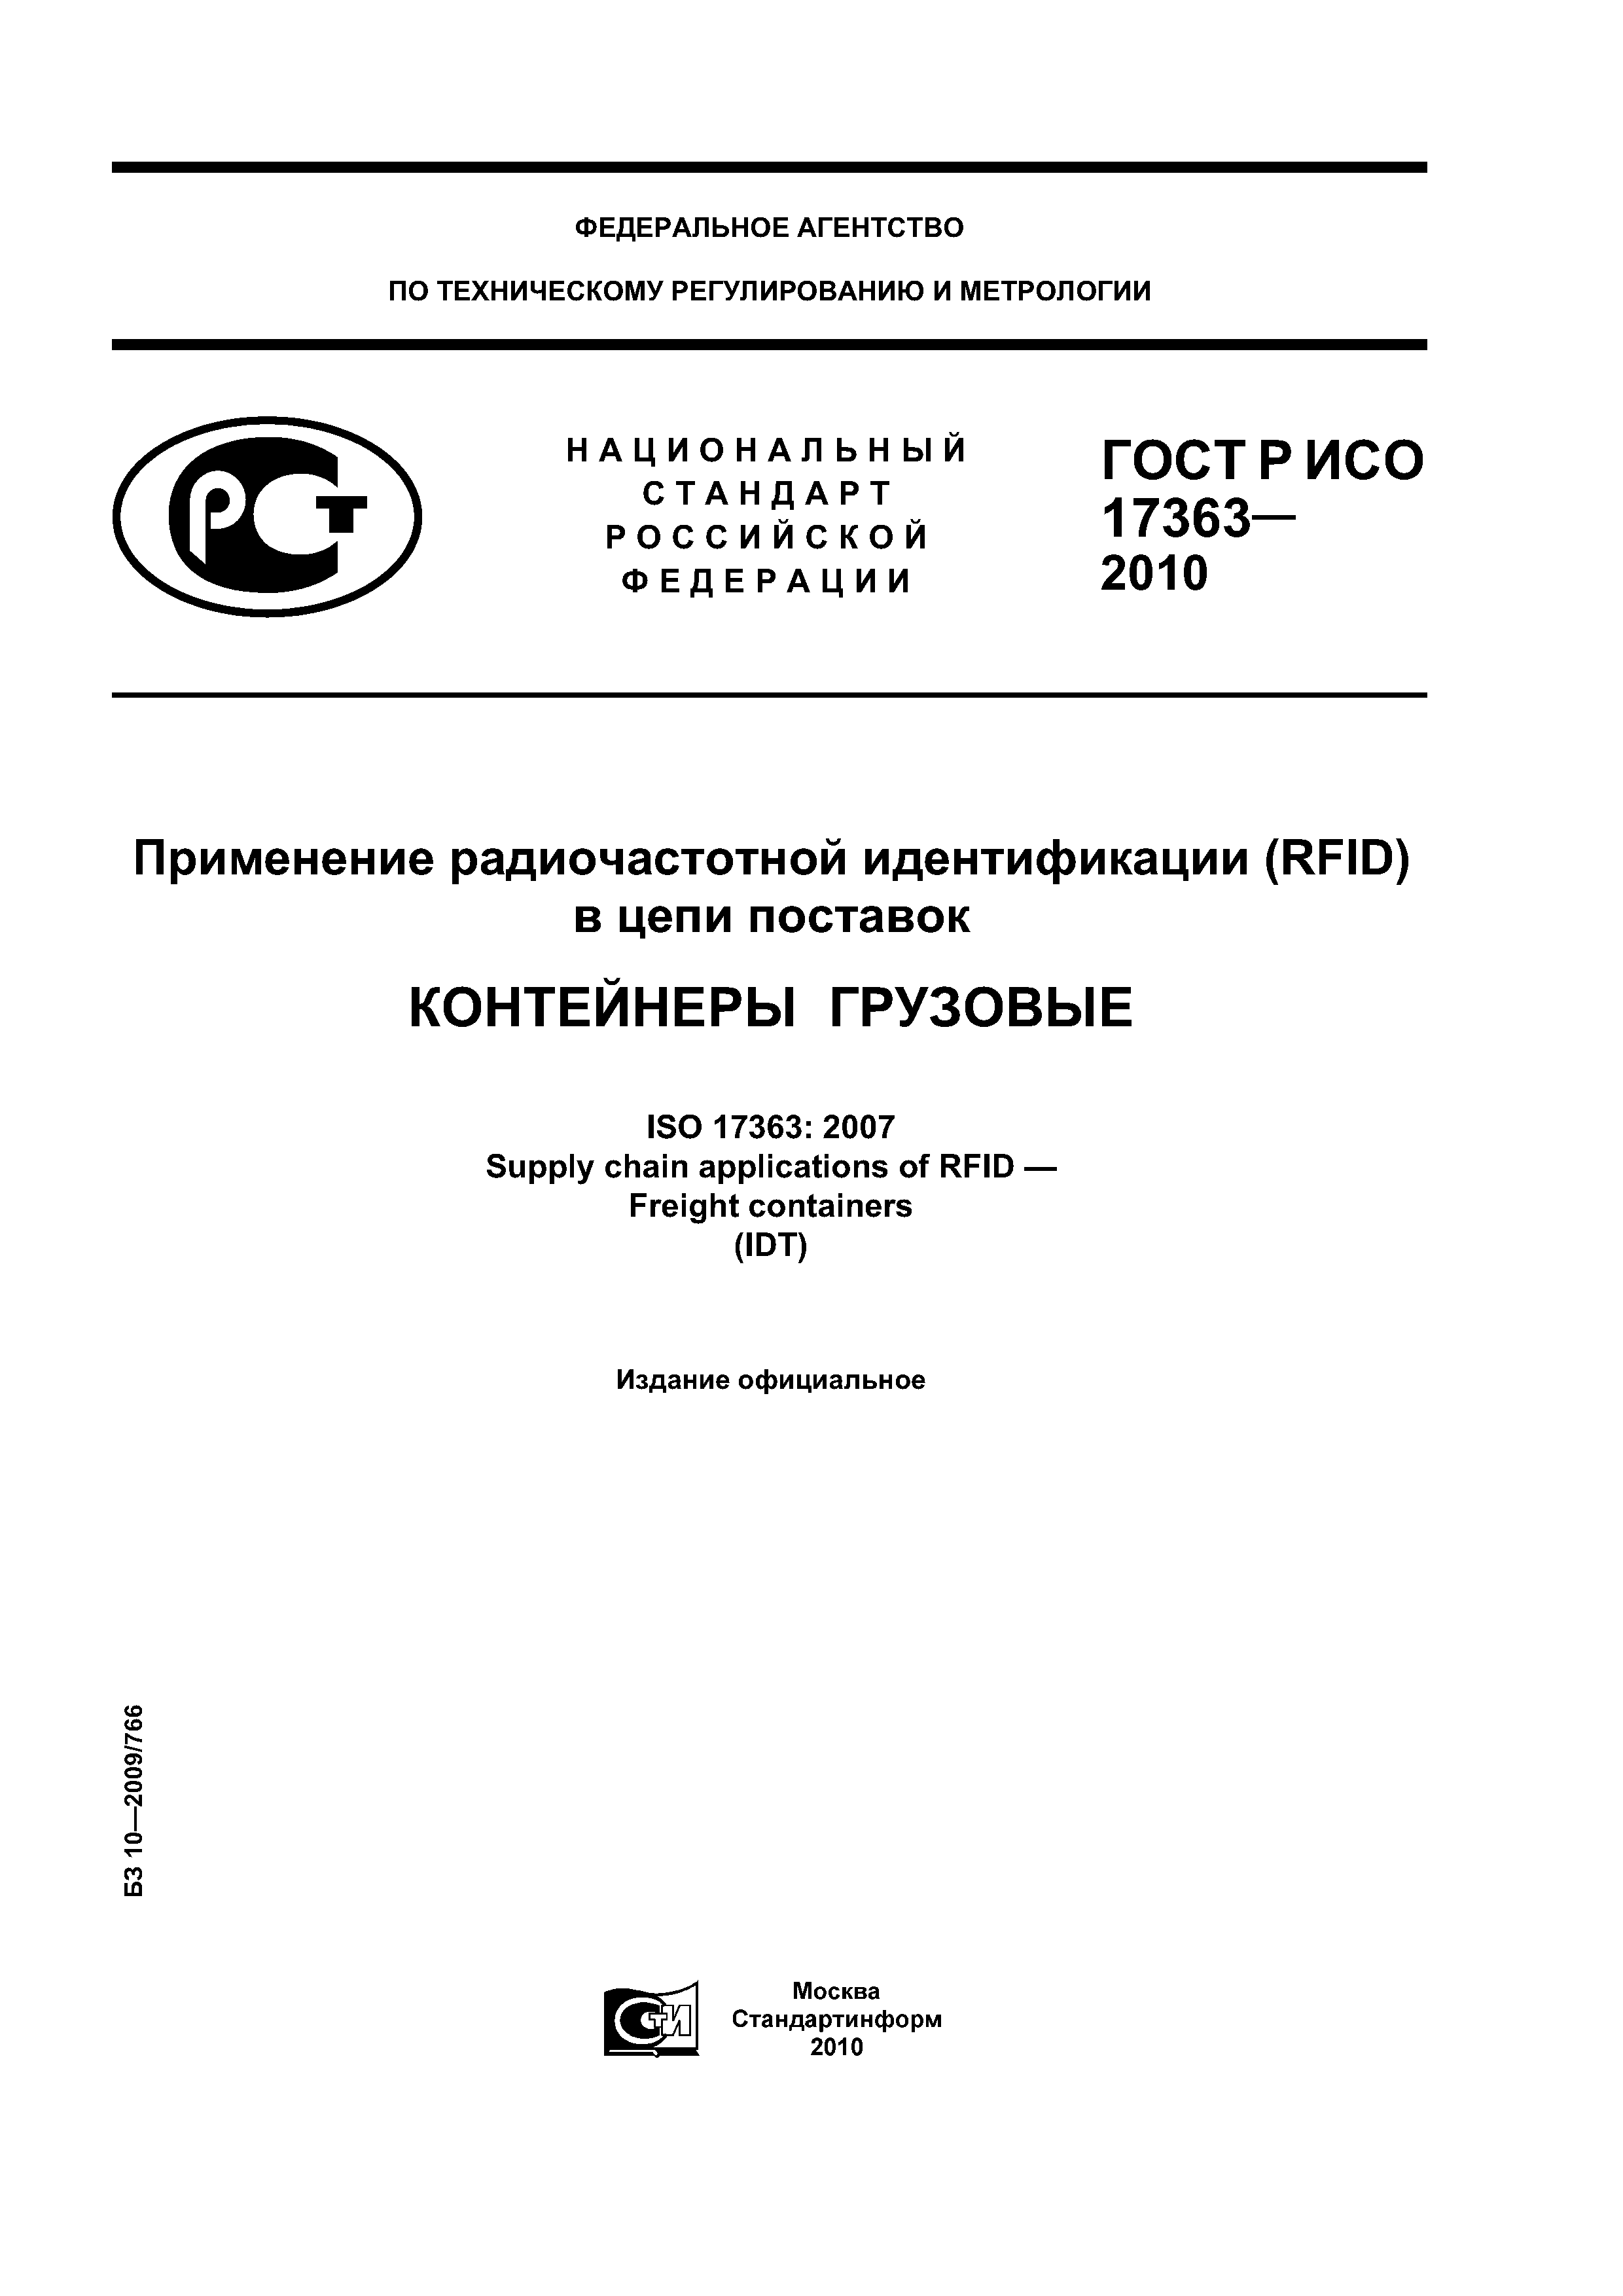 ГОСТ Р ИСО 17363-2010